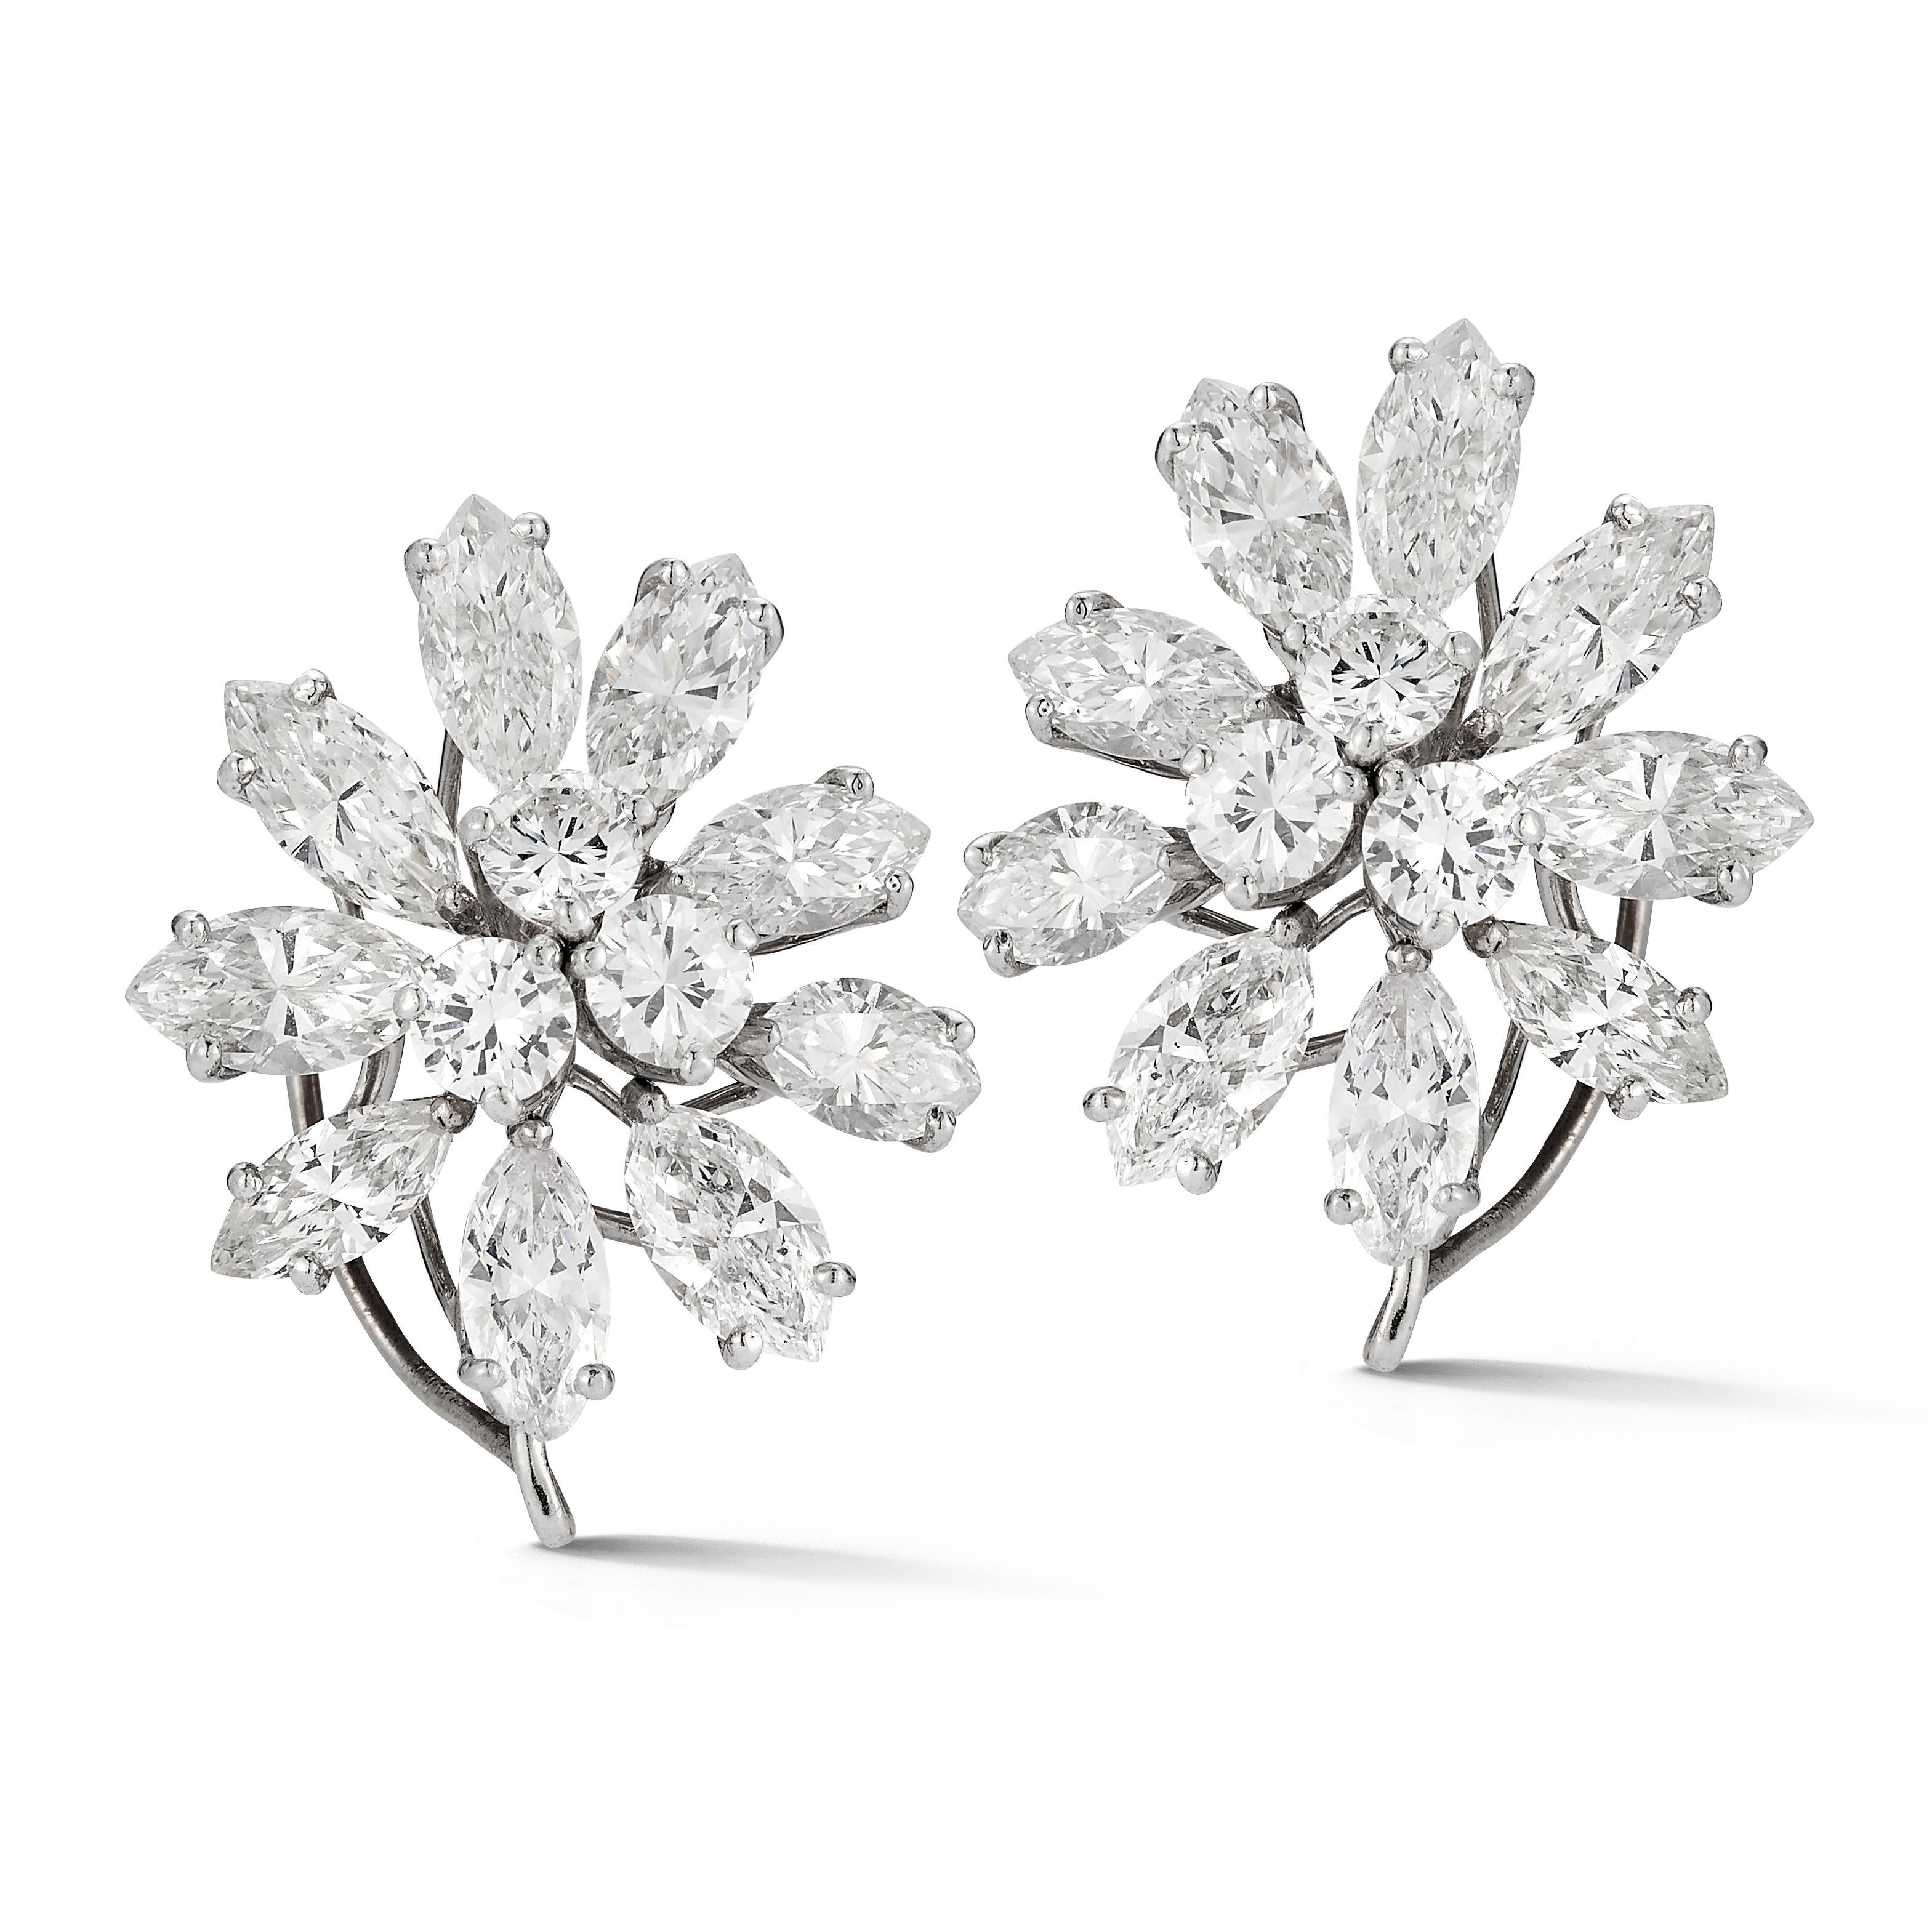 Cluster-Diamant-Ohrringe

Ein Paar Ohrringe aus Platin, besetzt mit 6 Diamanten im Rundschliff und 18 Diamanten im Marquise-Schliff. 

Ungefähres Gesamtgewicht der Diamanten: 7.14 Karat

Länge: 0,75